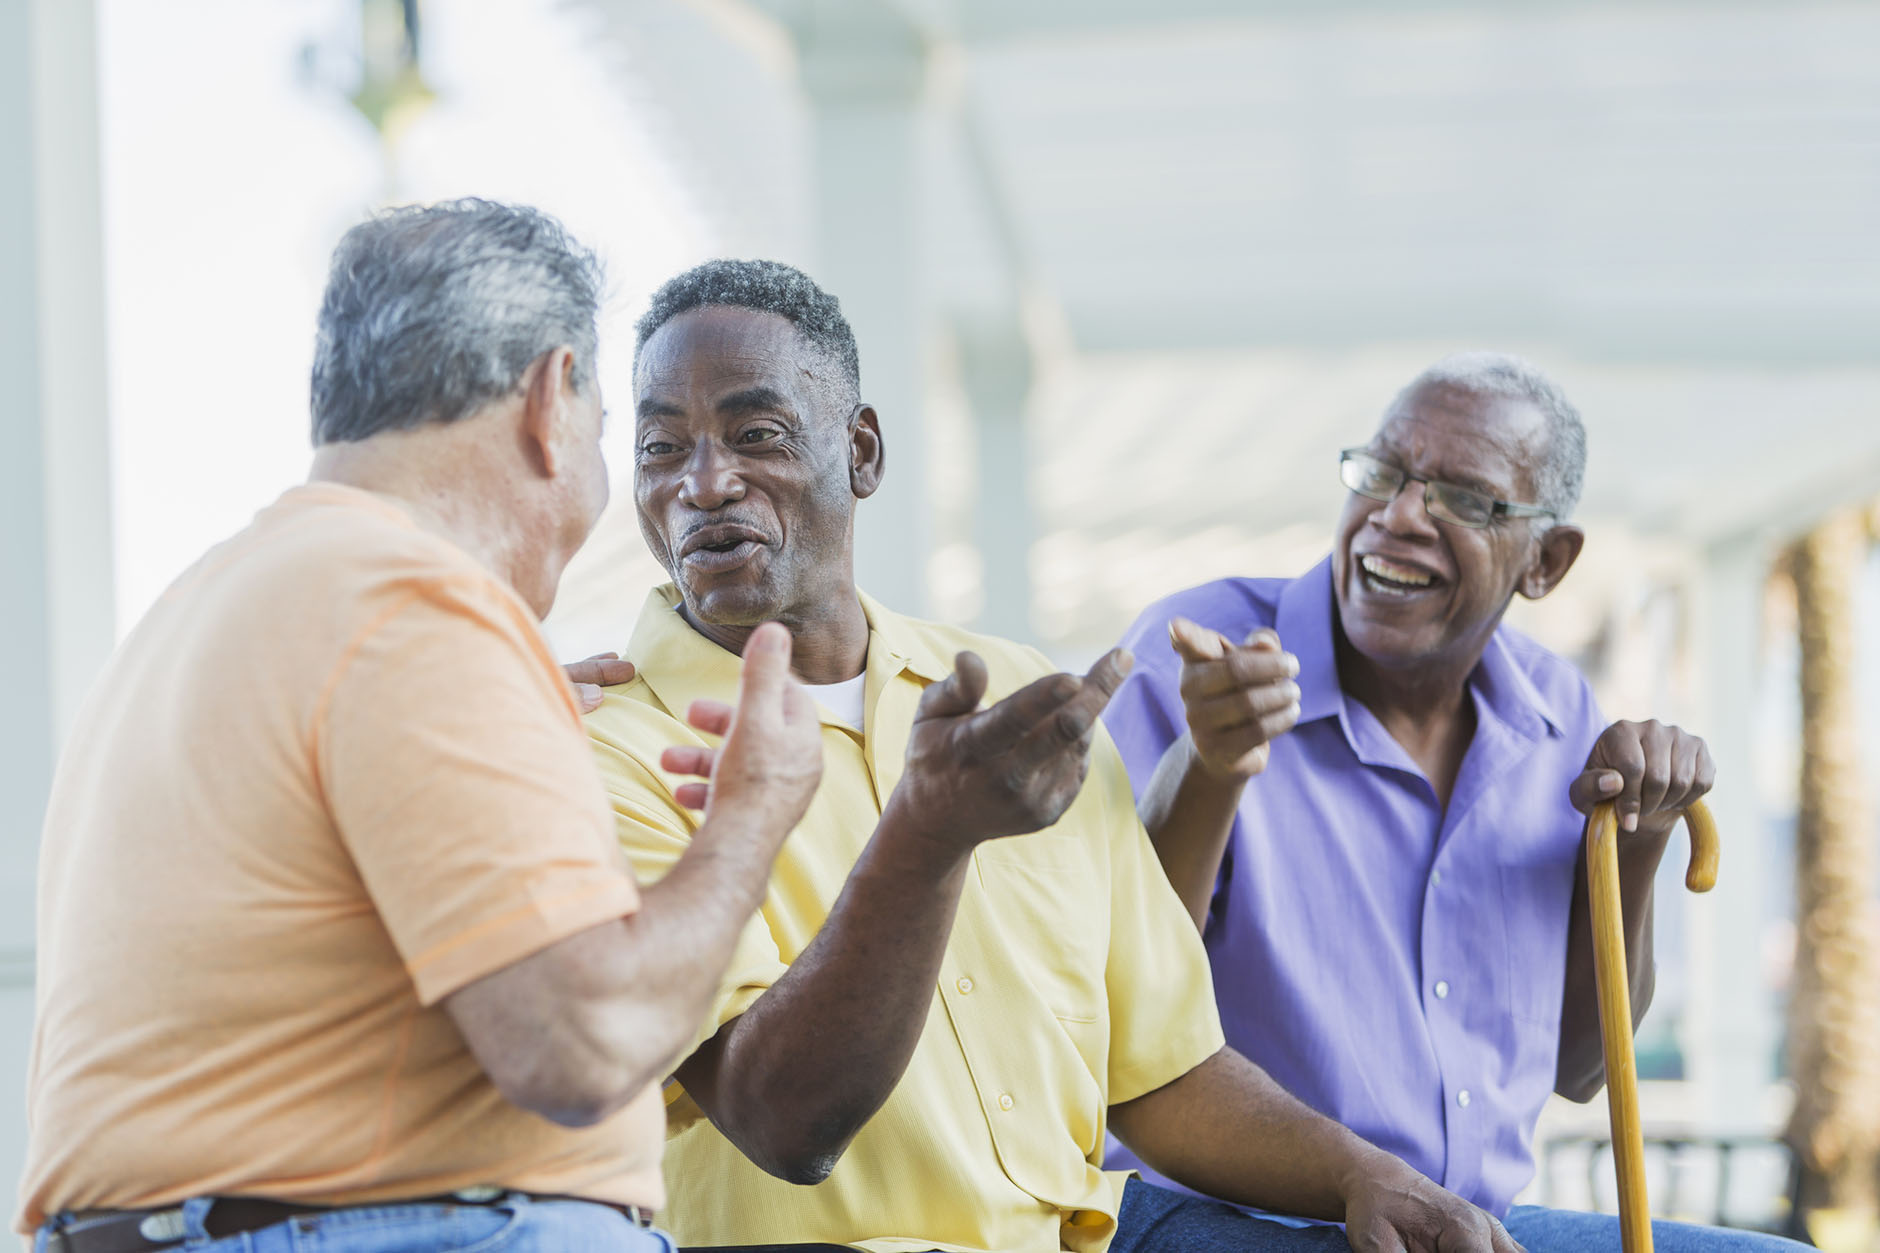 Ways to Help Seniors Combat Isolation